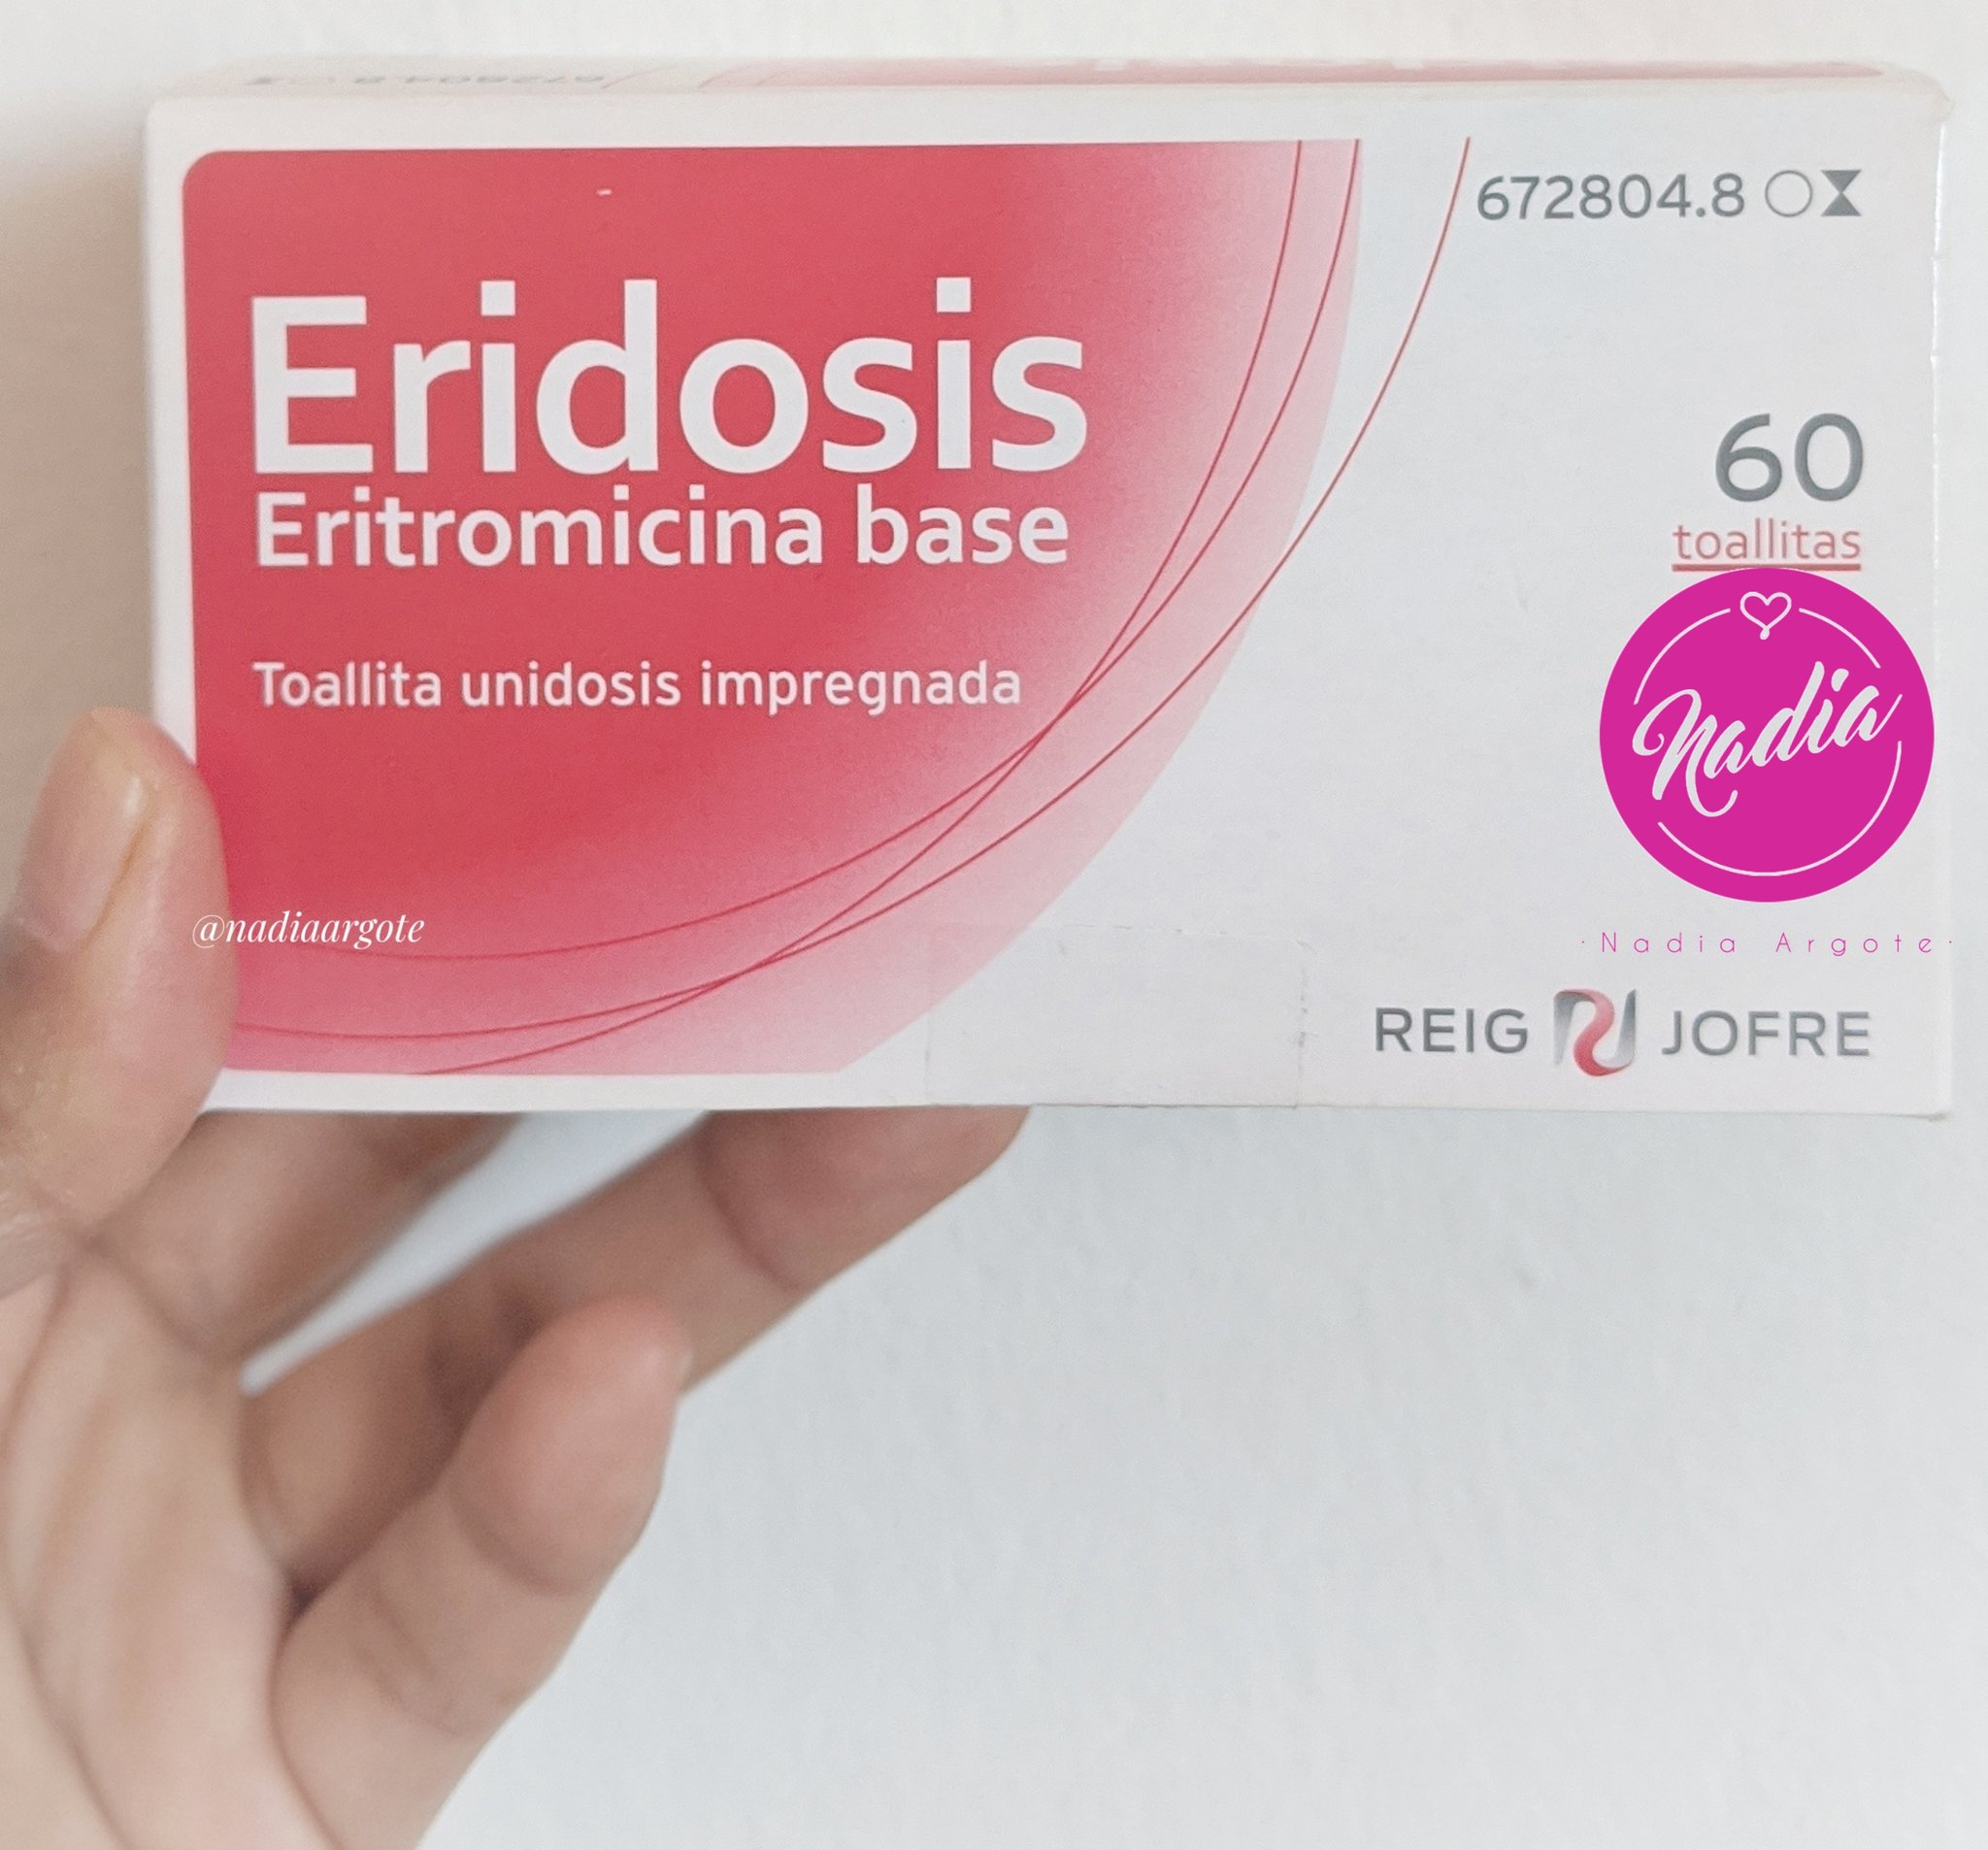 Nadia Argote on "Eridosis es un producto específico para piel acneica y es un antibiótico tópico para acné, lo recetó mi propio médico al ver la gravedad de mi acné,